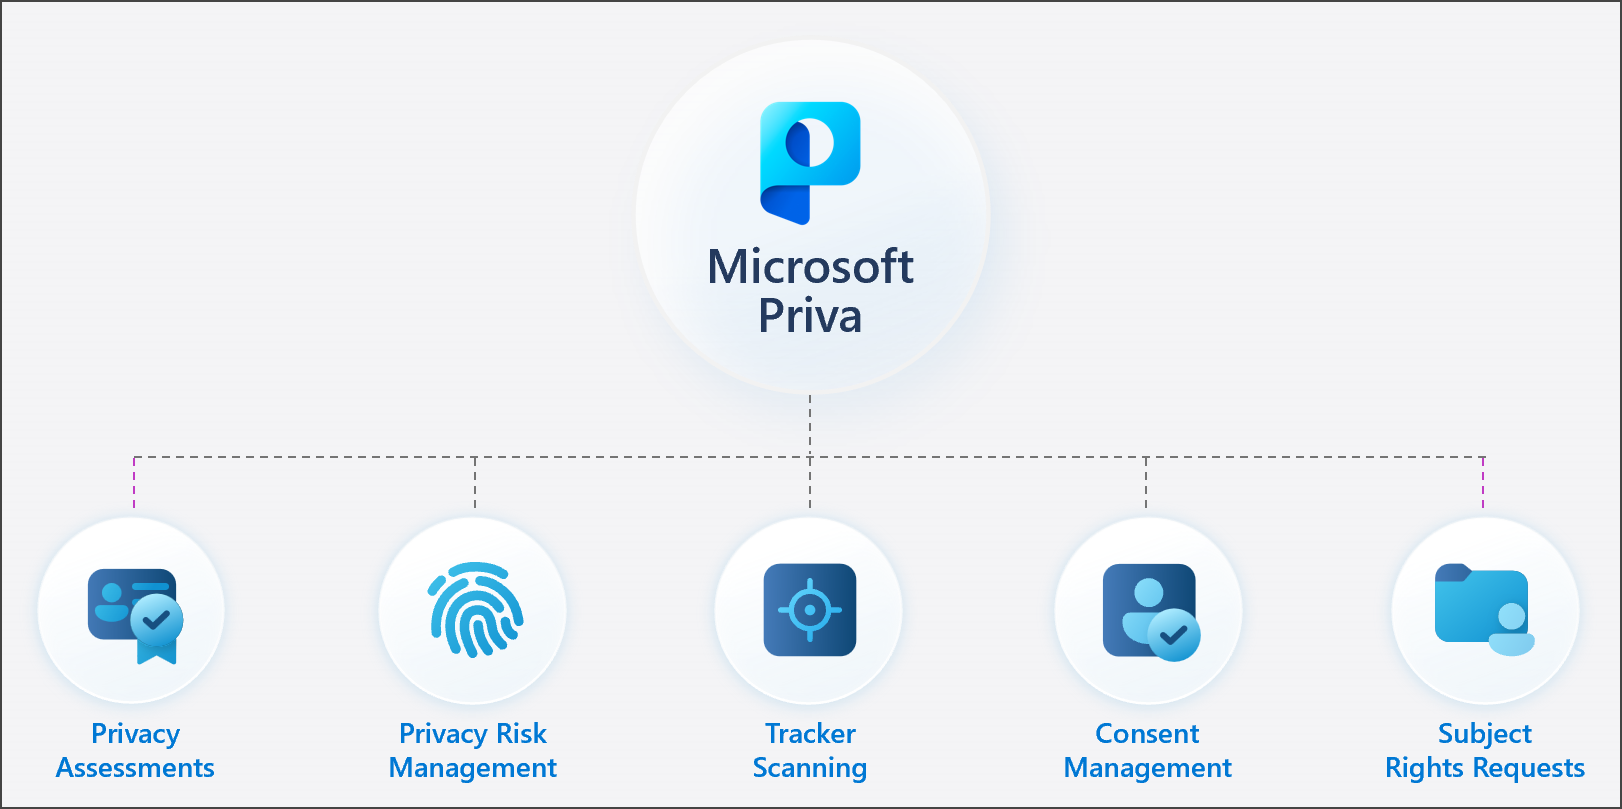 Ilustração da família de soluções Microsoft Priva.